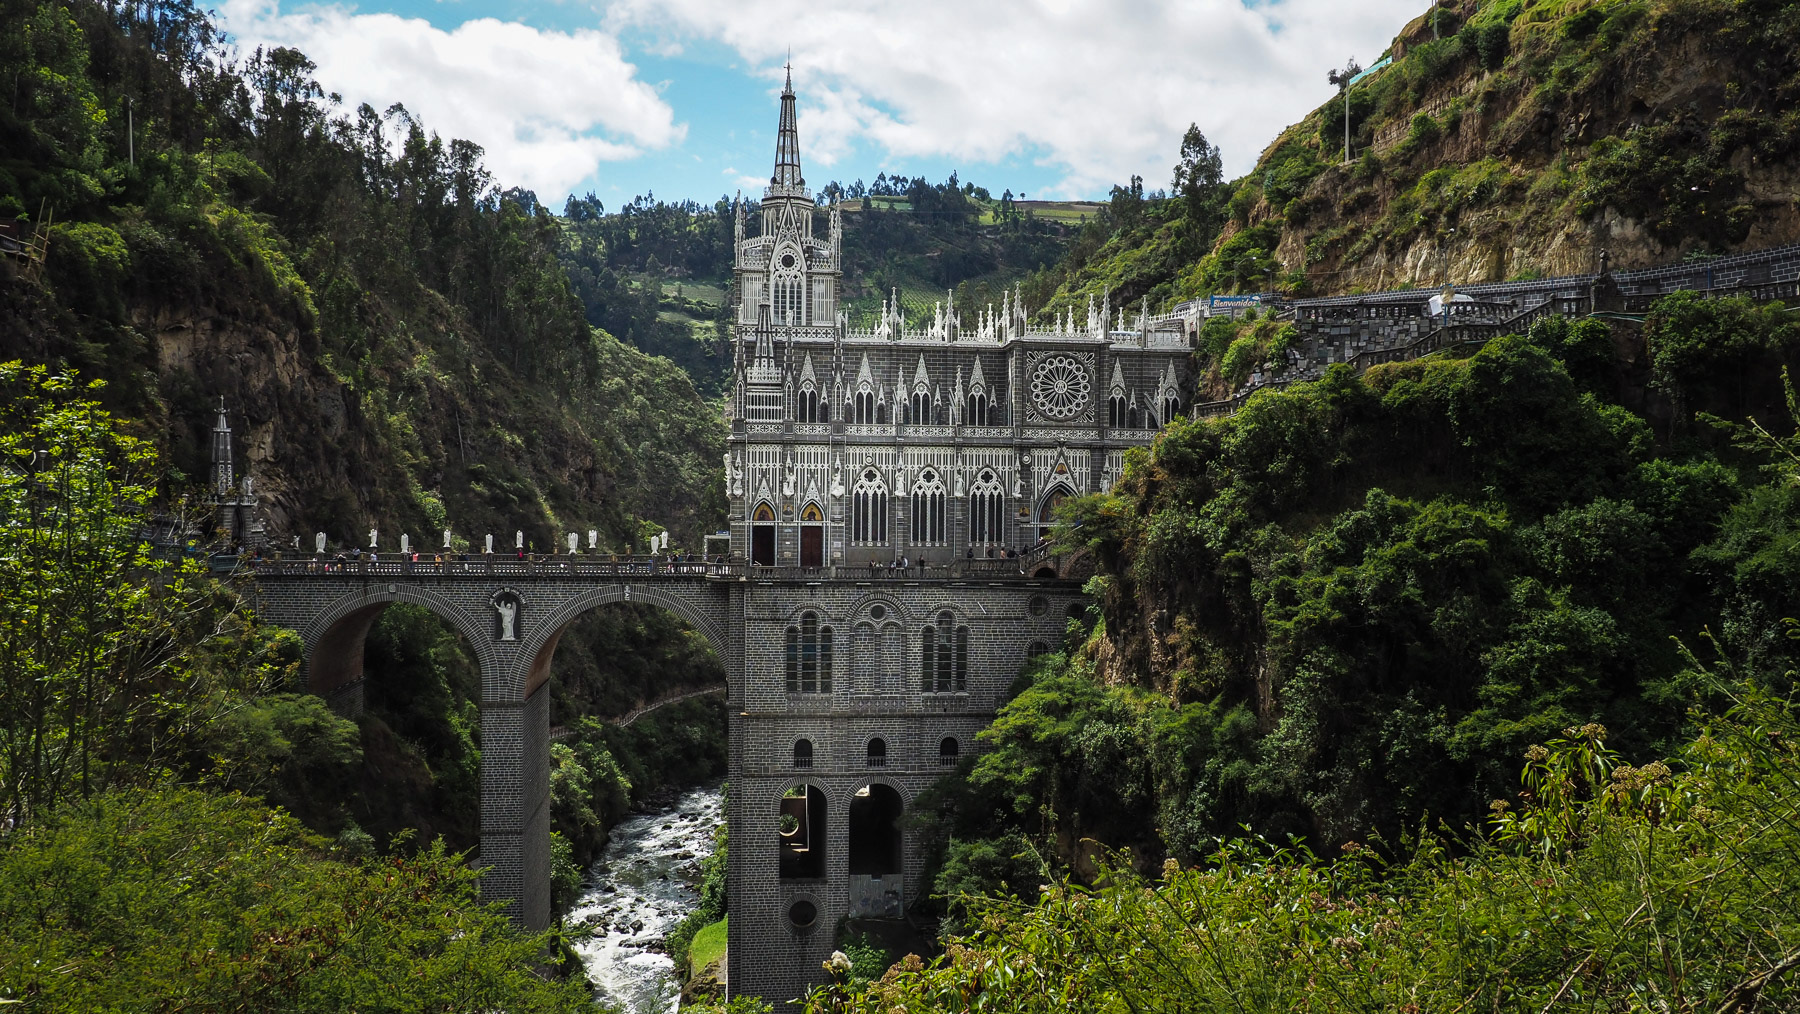 Santuario de las Lajas – Wallfahrtskirche direkt in eine steile Schlucht gebaut